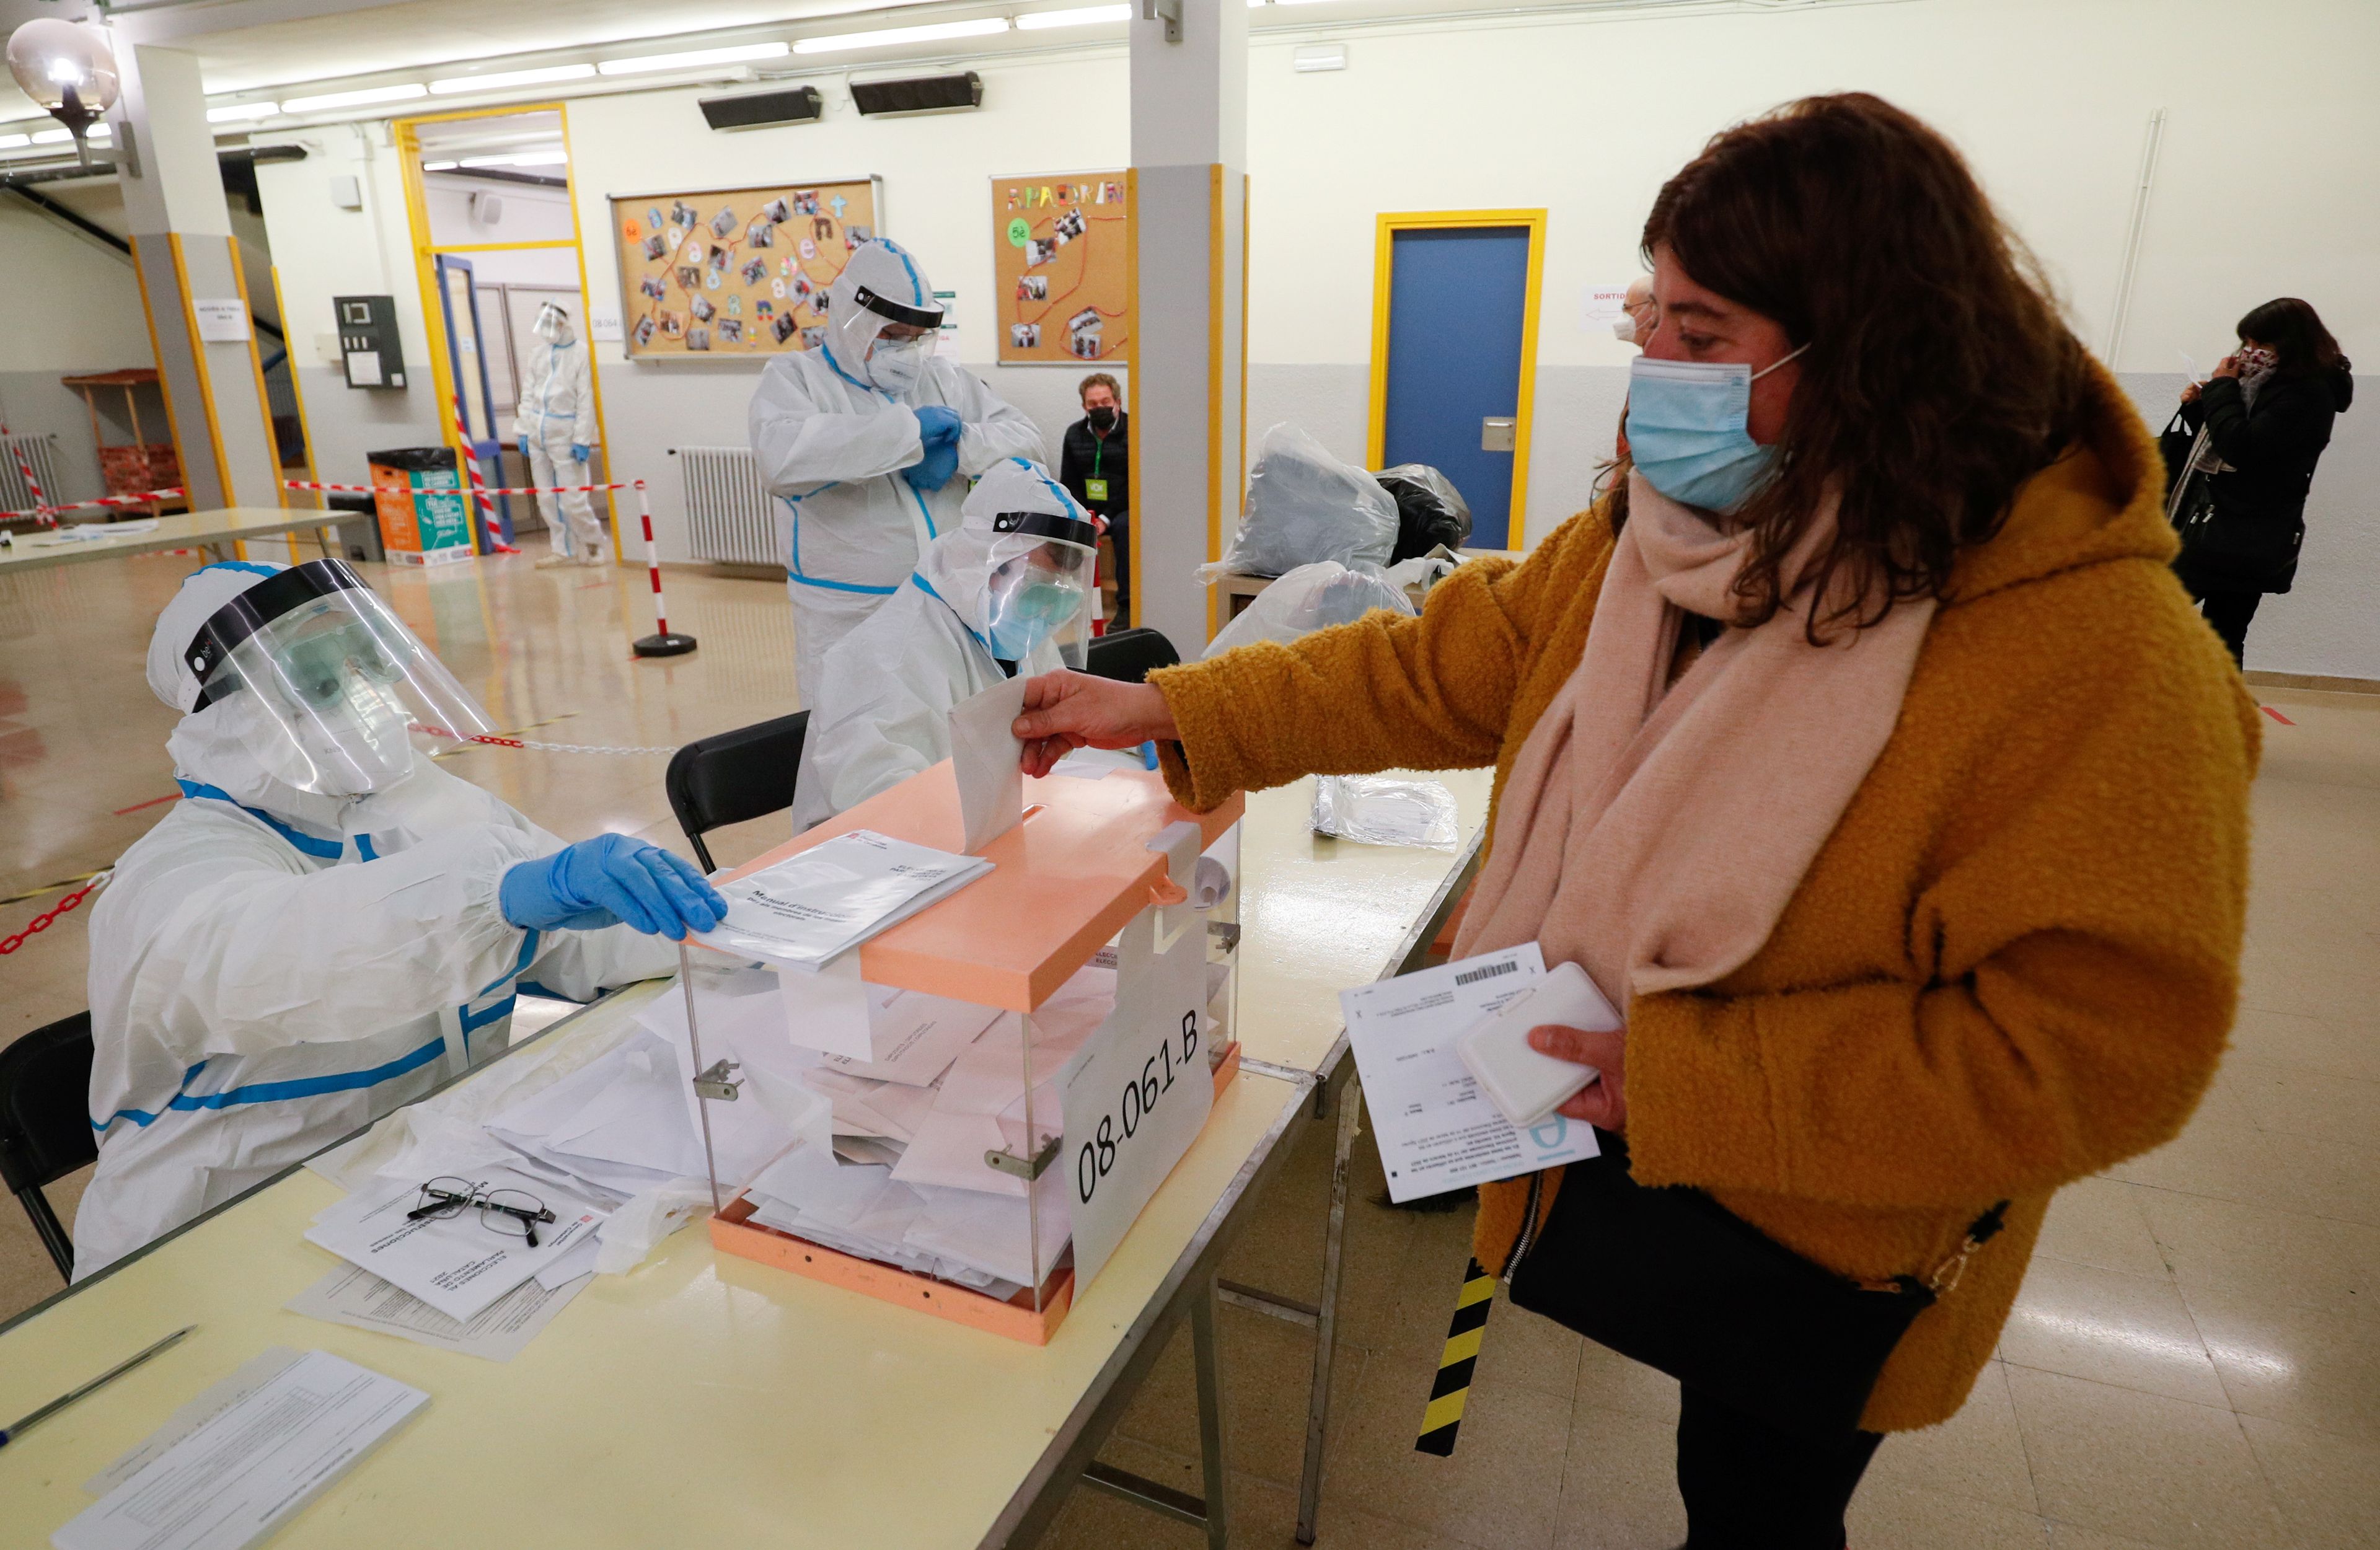 Medidas de protección anticovid para las elecciones del 4M en Madrid: horarios recomendados y protocolo para votar